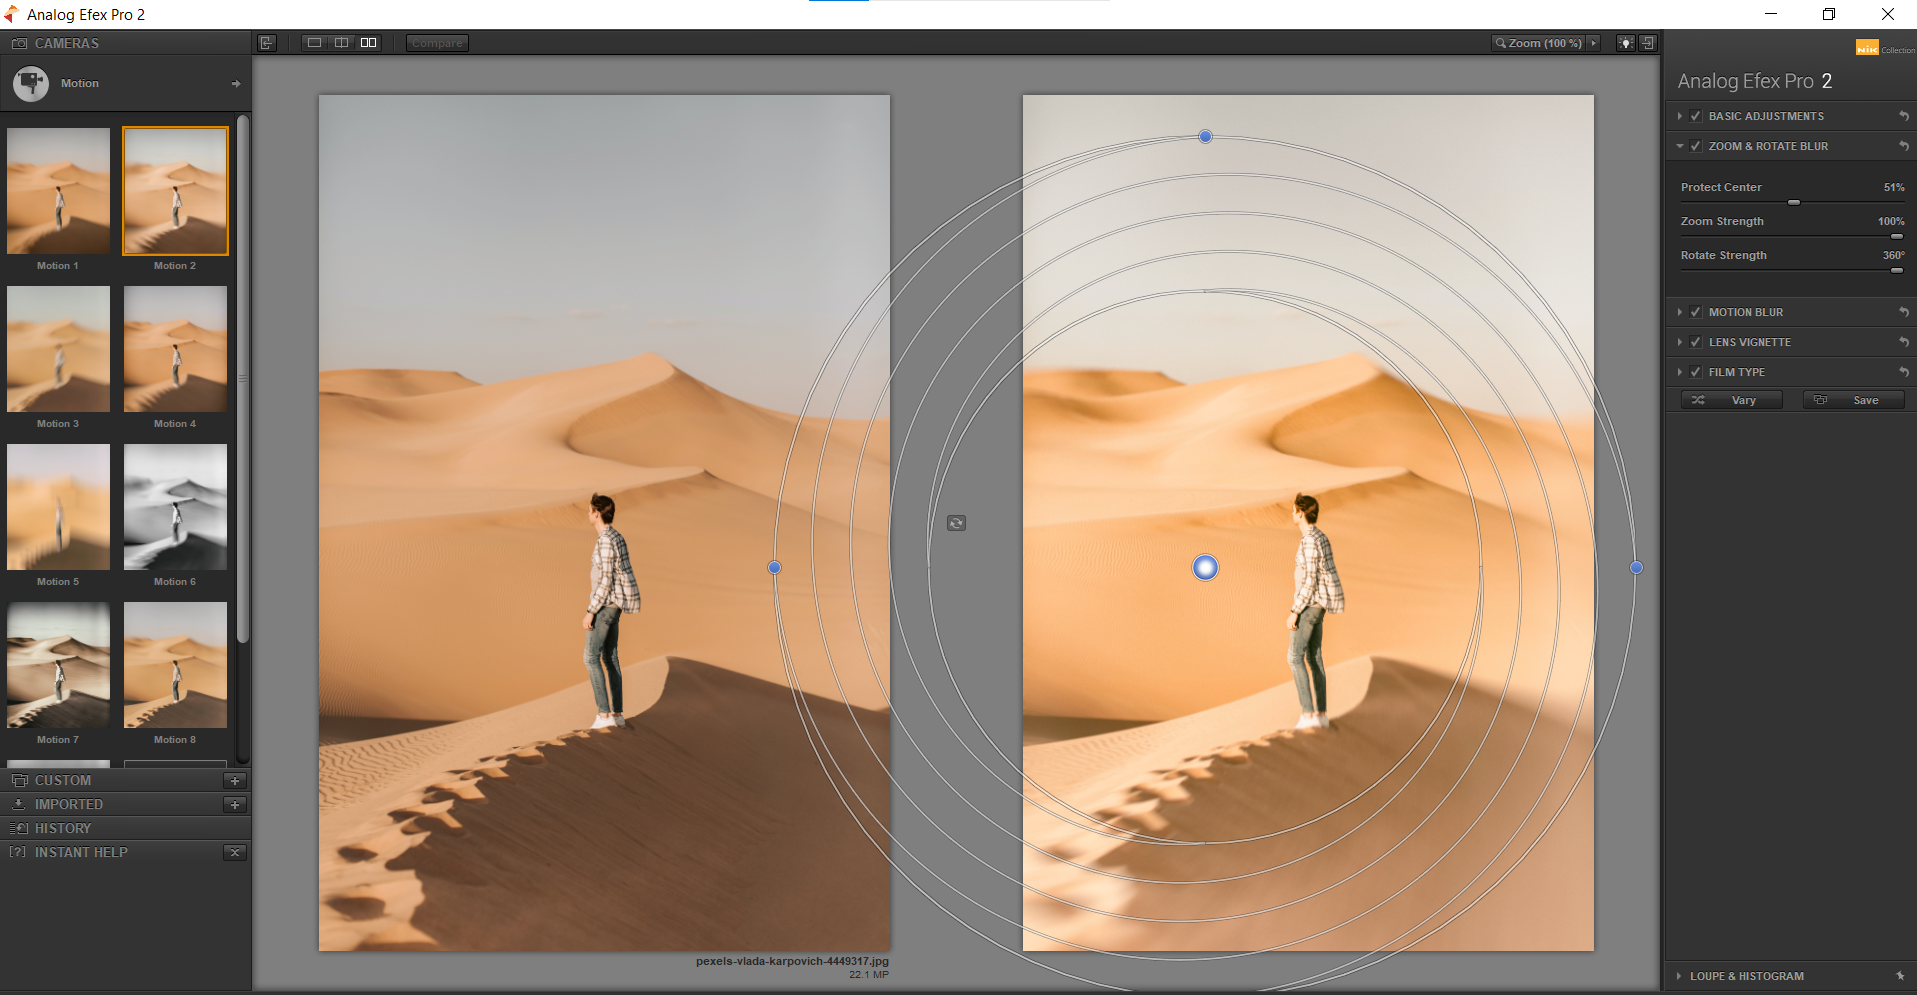 6 Motion Blur in Analog Efex Pro - 10 effetti sorprendenti che puoi applicare usando i plugin Nik con Photoshop